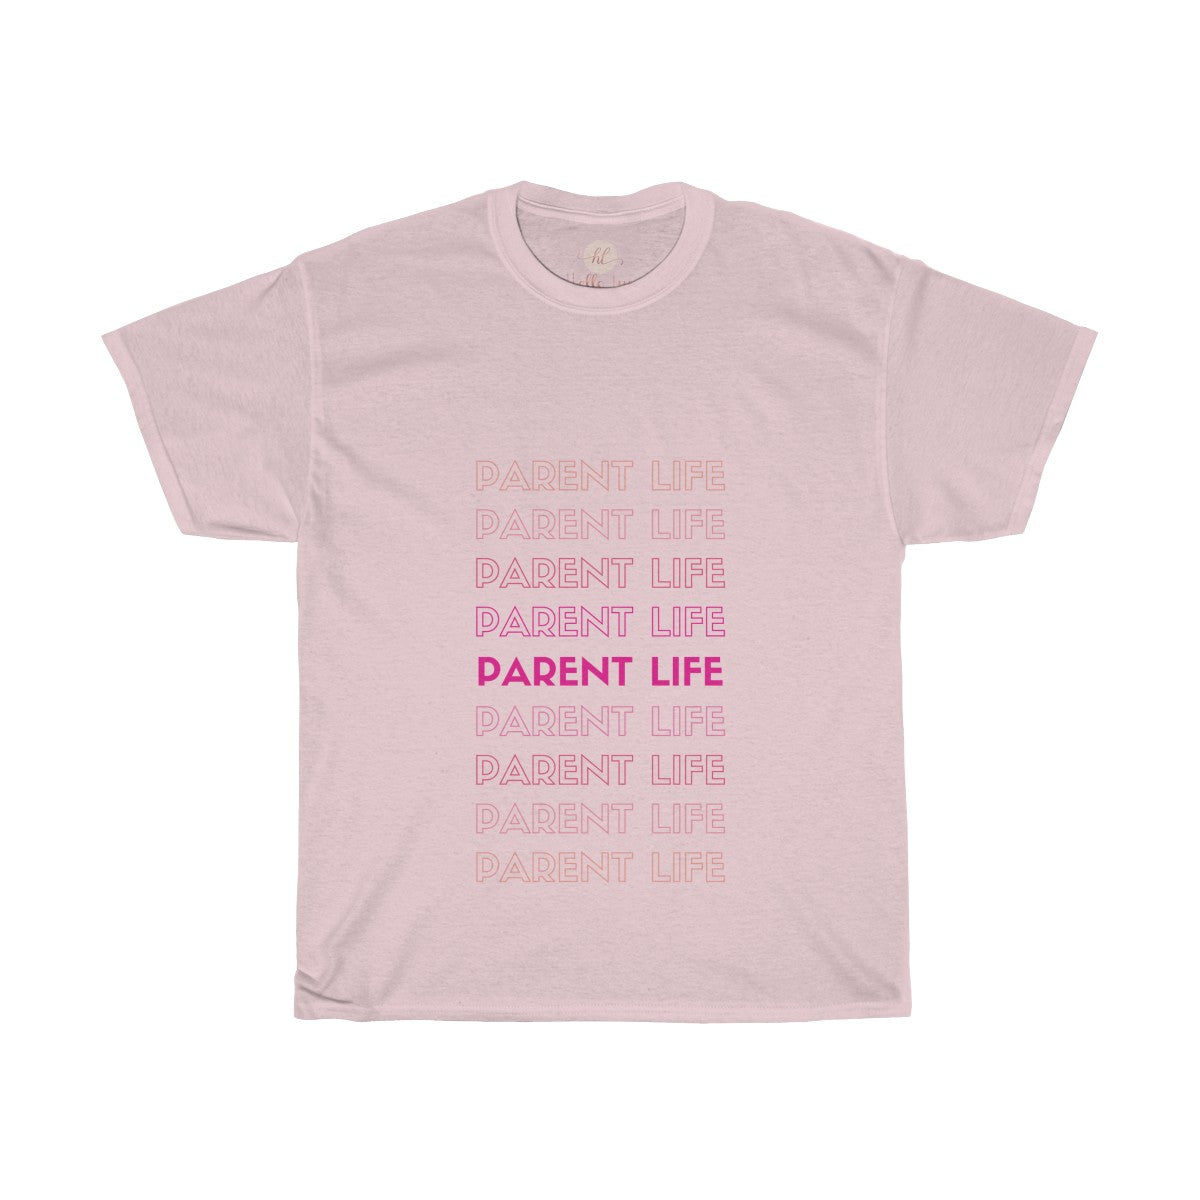 Parent Life Tee| Parent Life Shirt| Parents T-shirt|